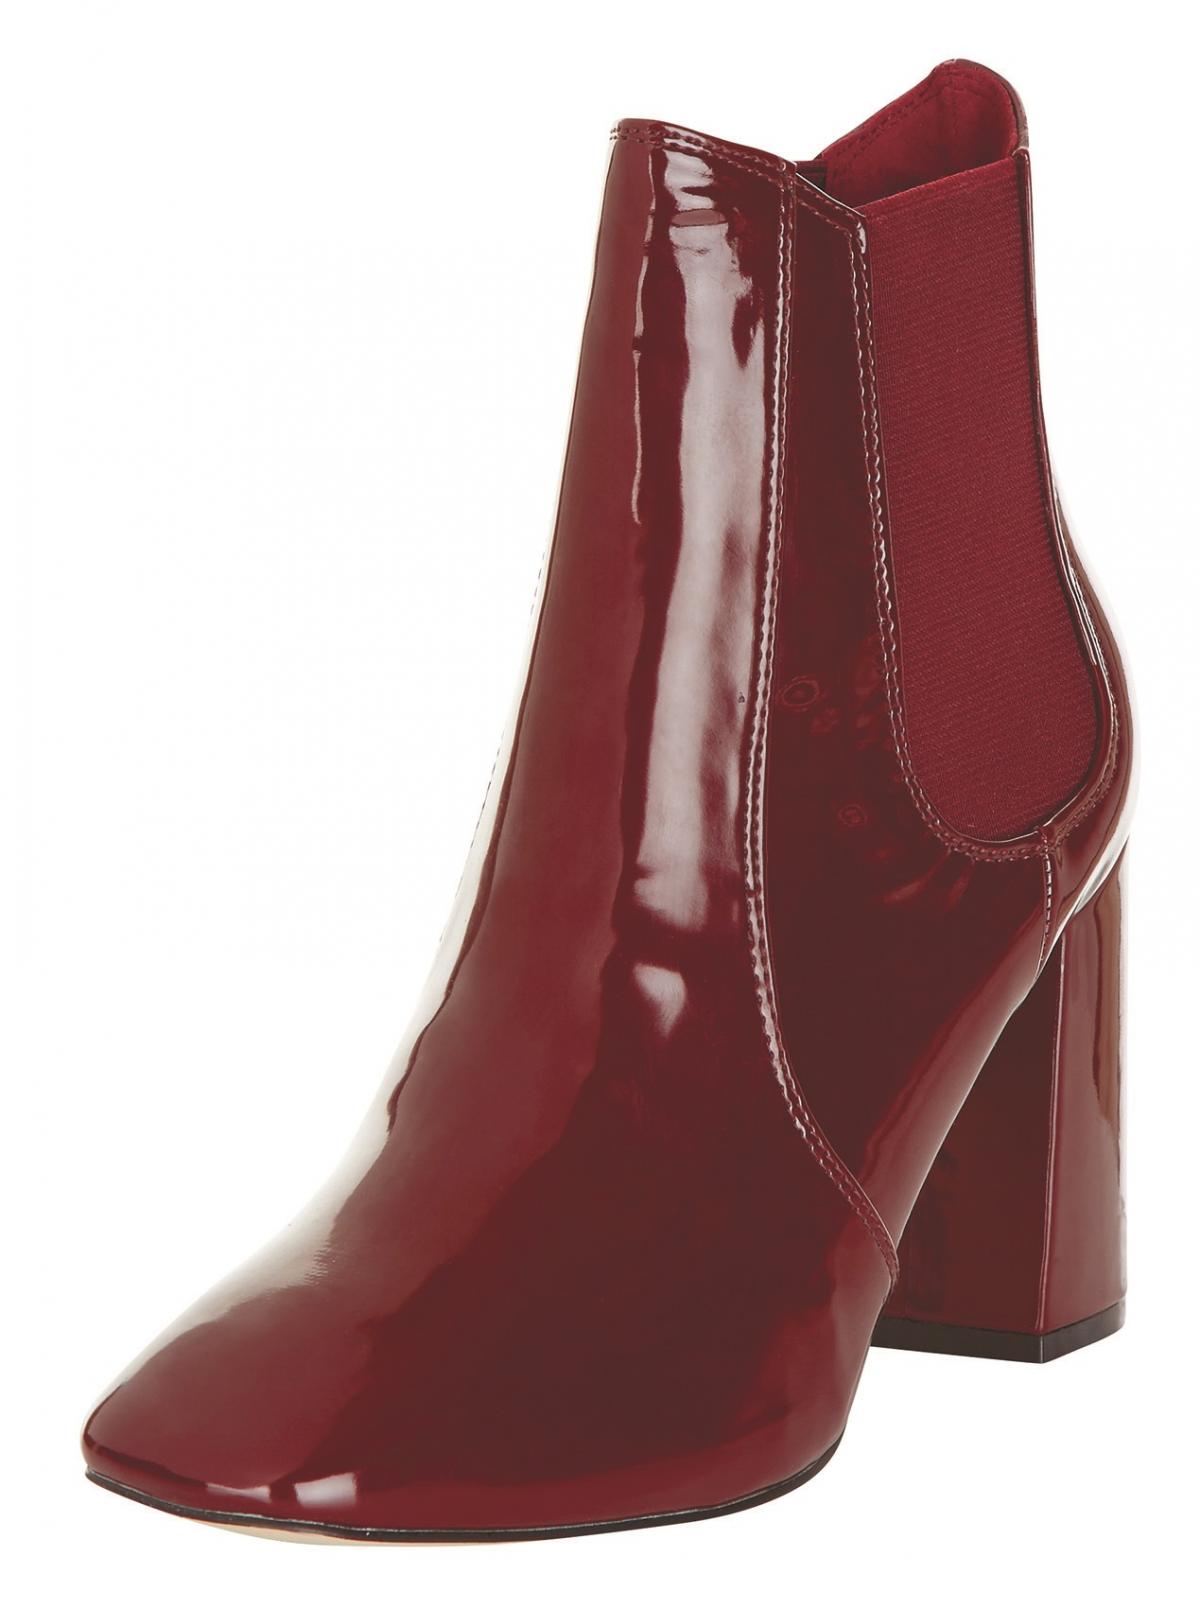 New Look, Red Patent Block Heel Chelsea Boots, £29.99